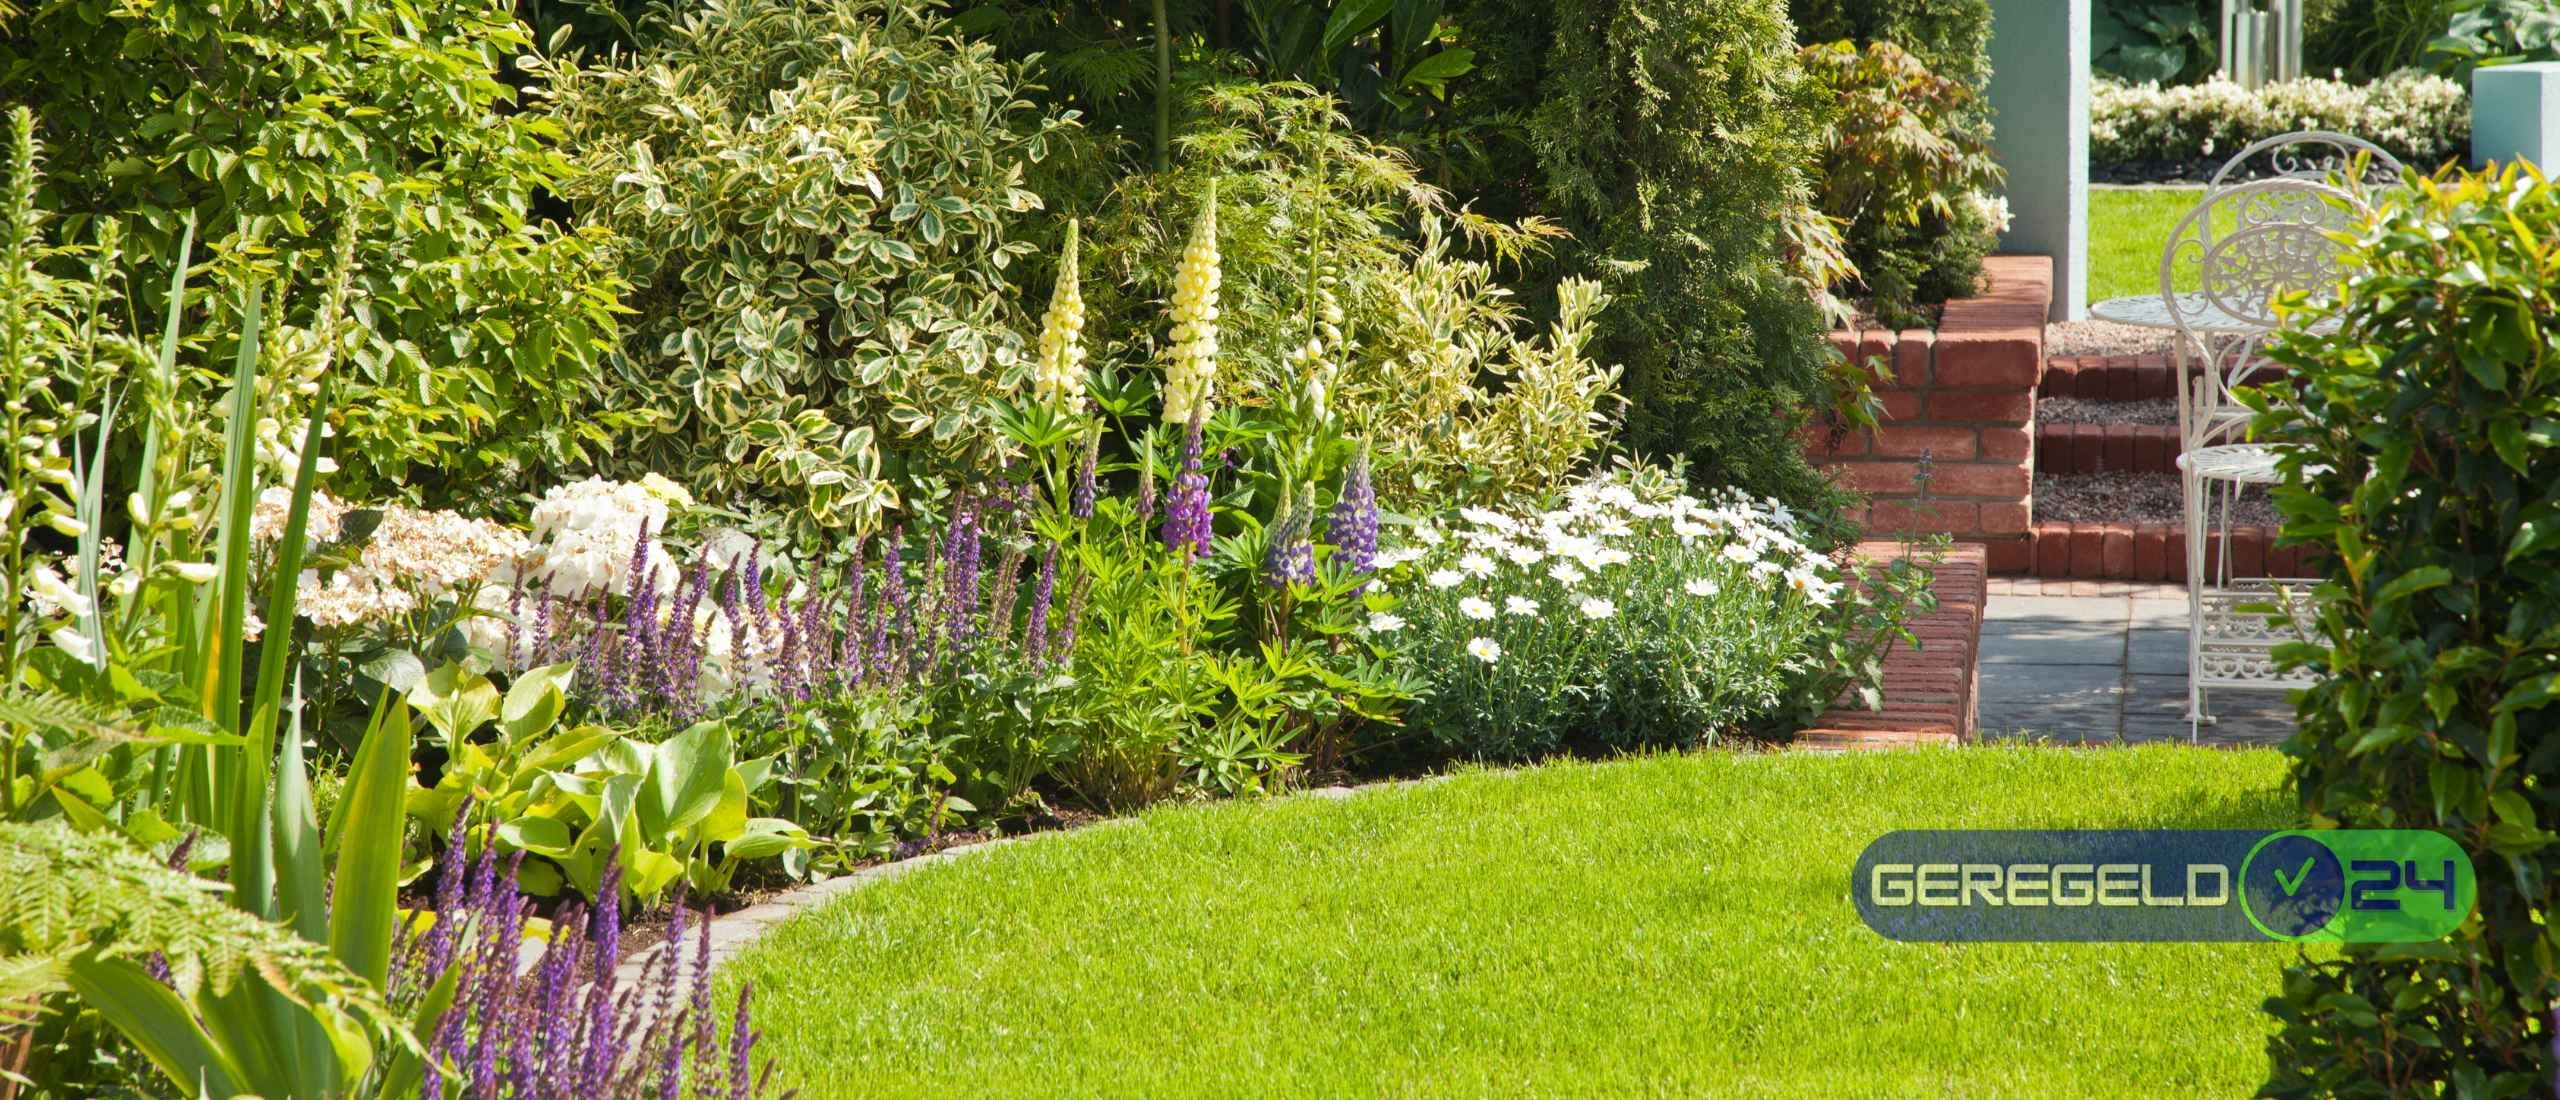 Hoe zorg je voor gezonden planten in de tuin?